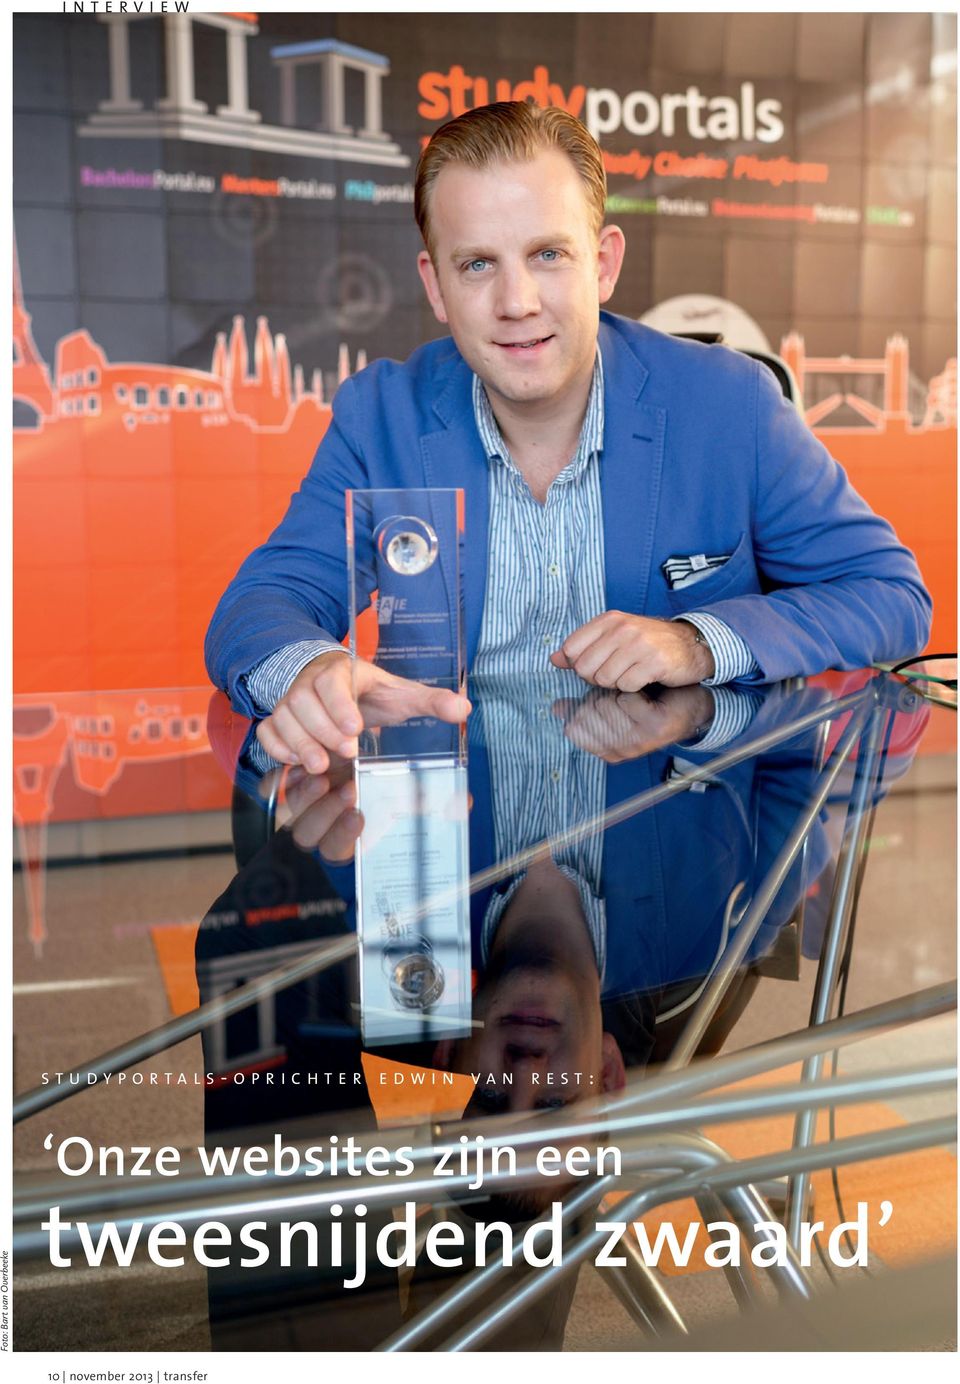 Foto: Bart van Overbeeke Onze websites zijn